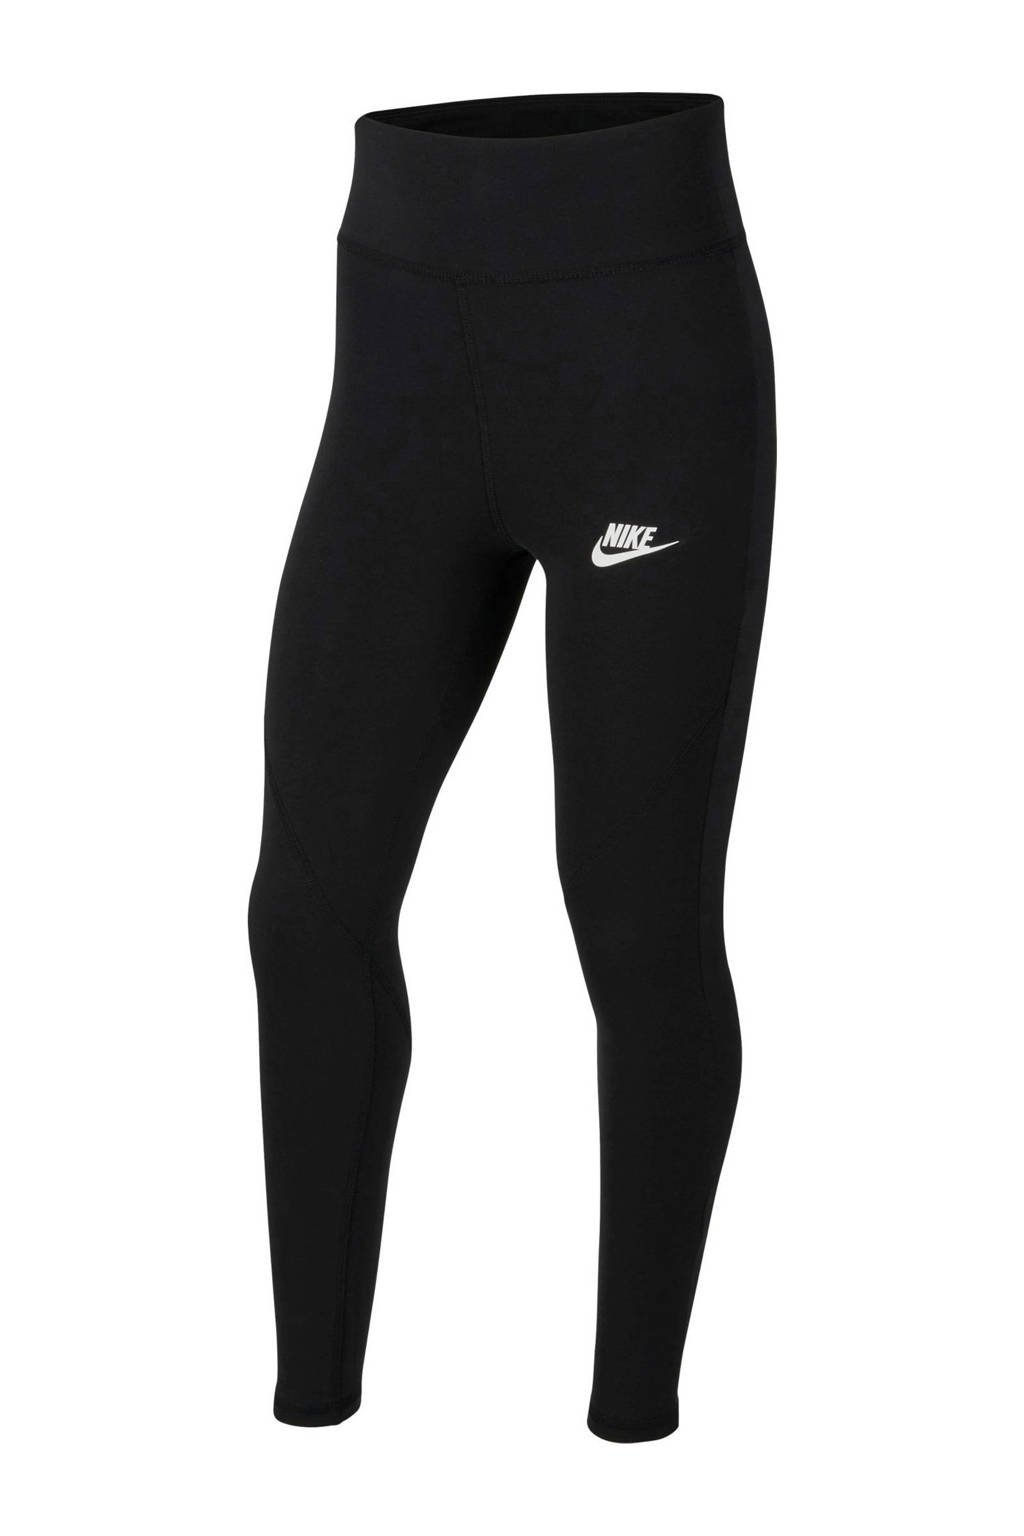 Misschien Joseph Banks Ontspannend Nike legging zwart kopen? | Morgen in huis | wehkamp